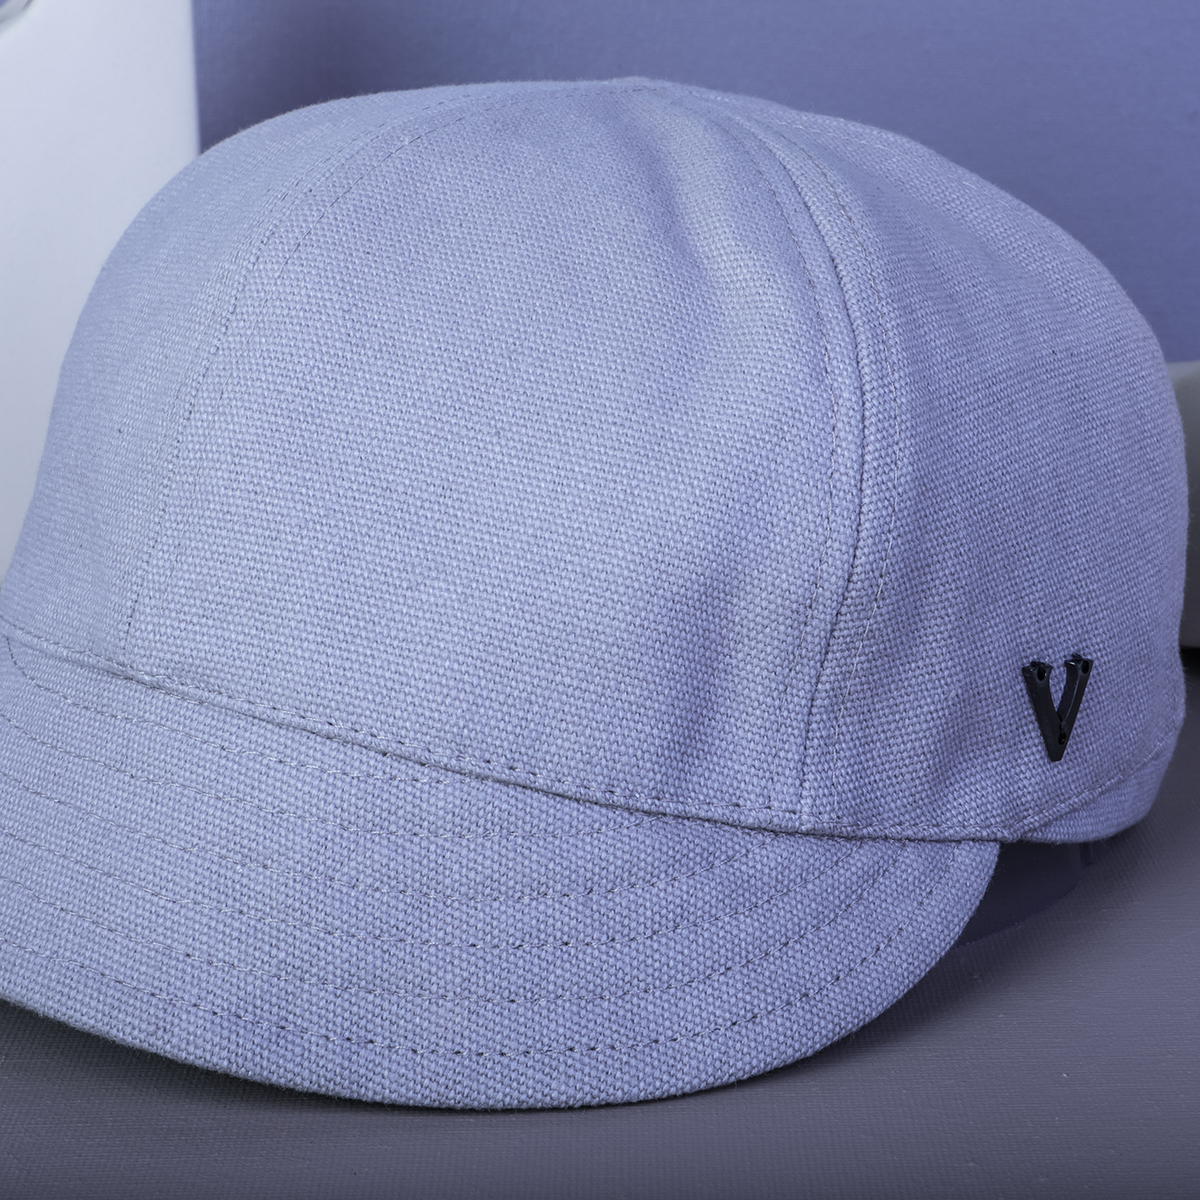 تصميم شعار vfa عادي قبعات خاصة مخصصة